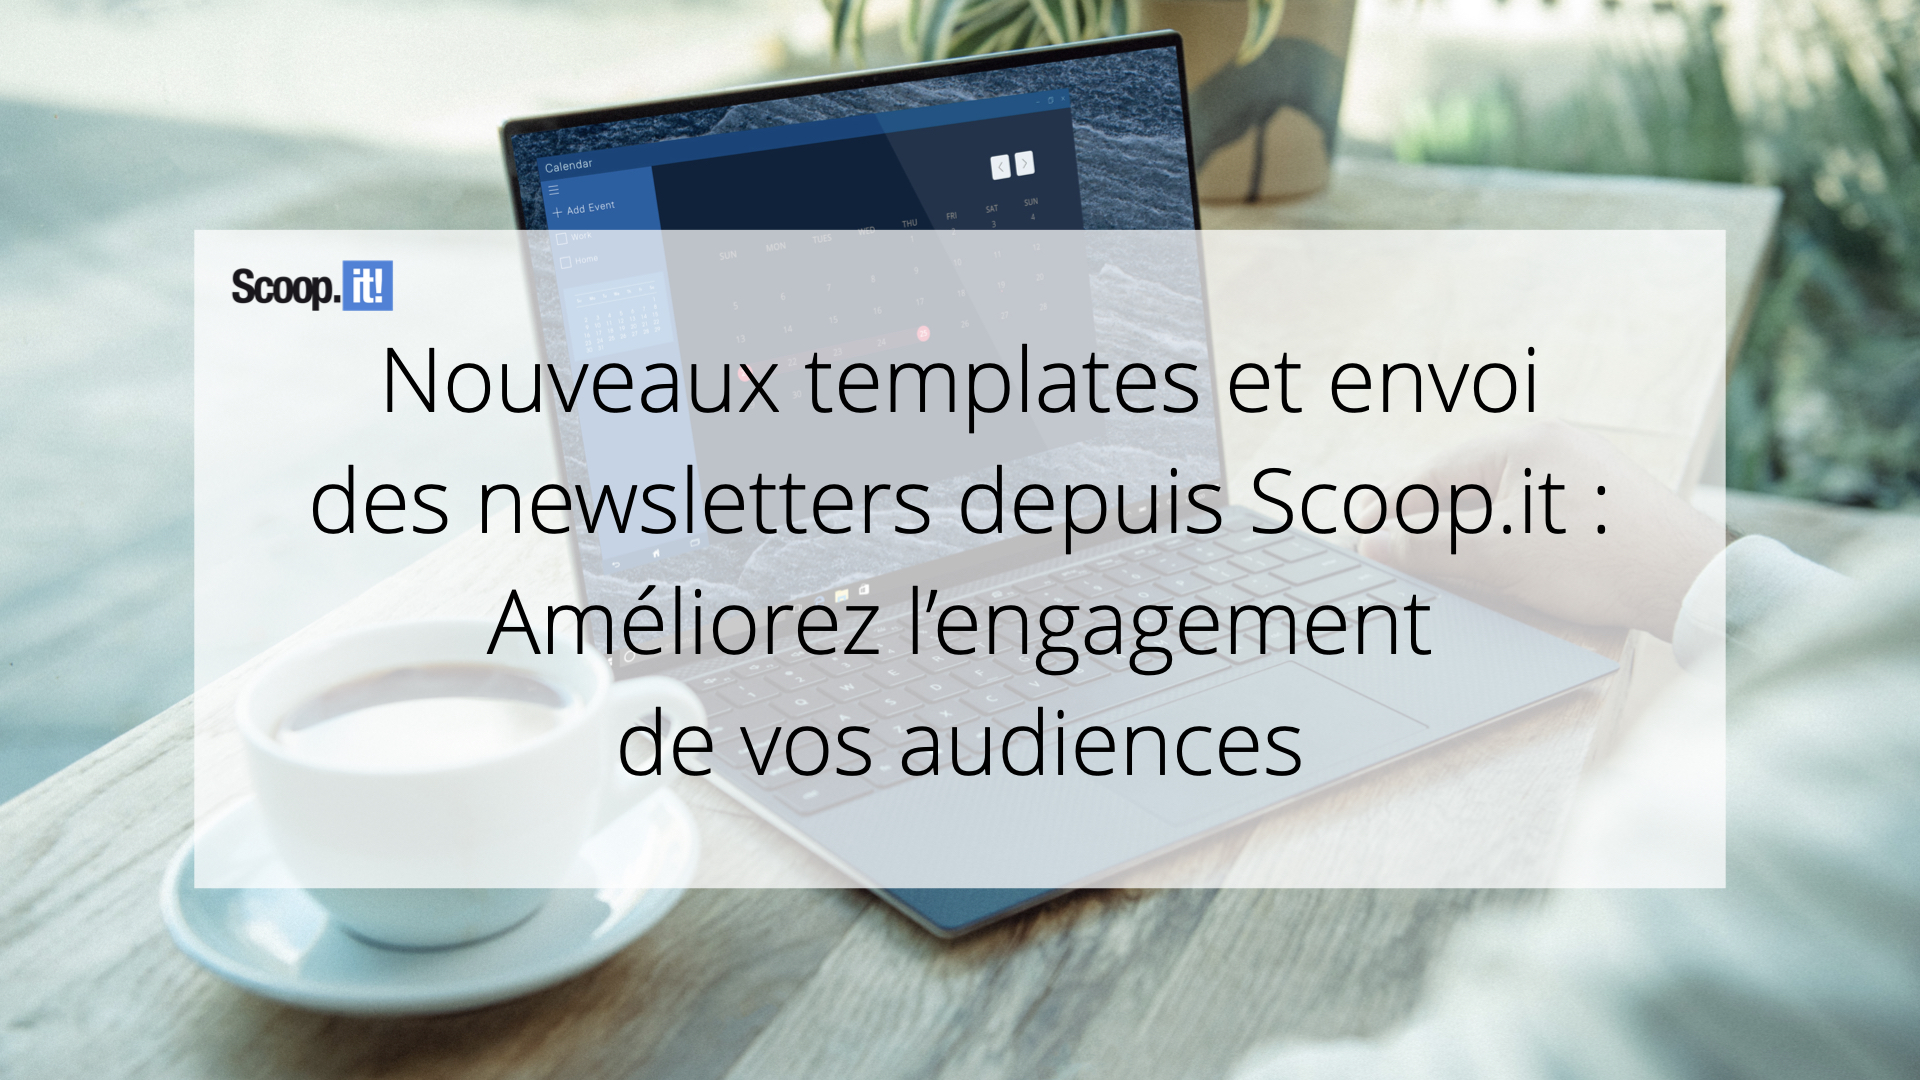 Nouveaux templates et envoi de newsletters depuis Scoop.it : améliorez l’engagement de vos audiences